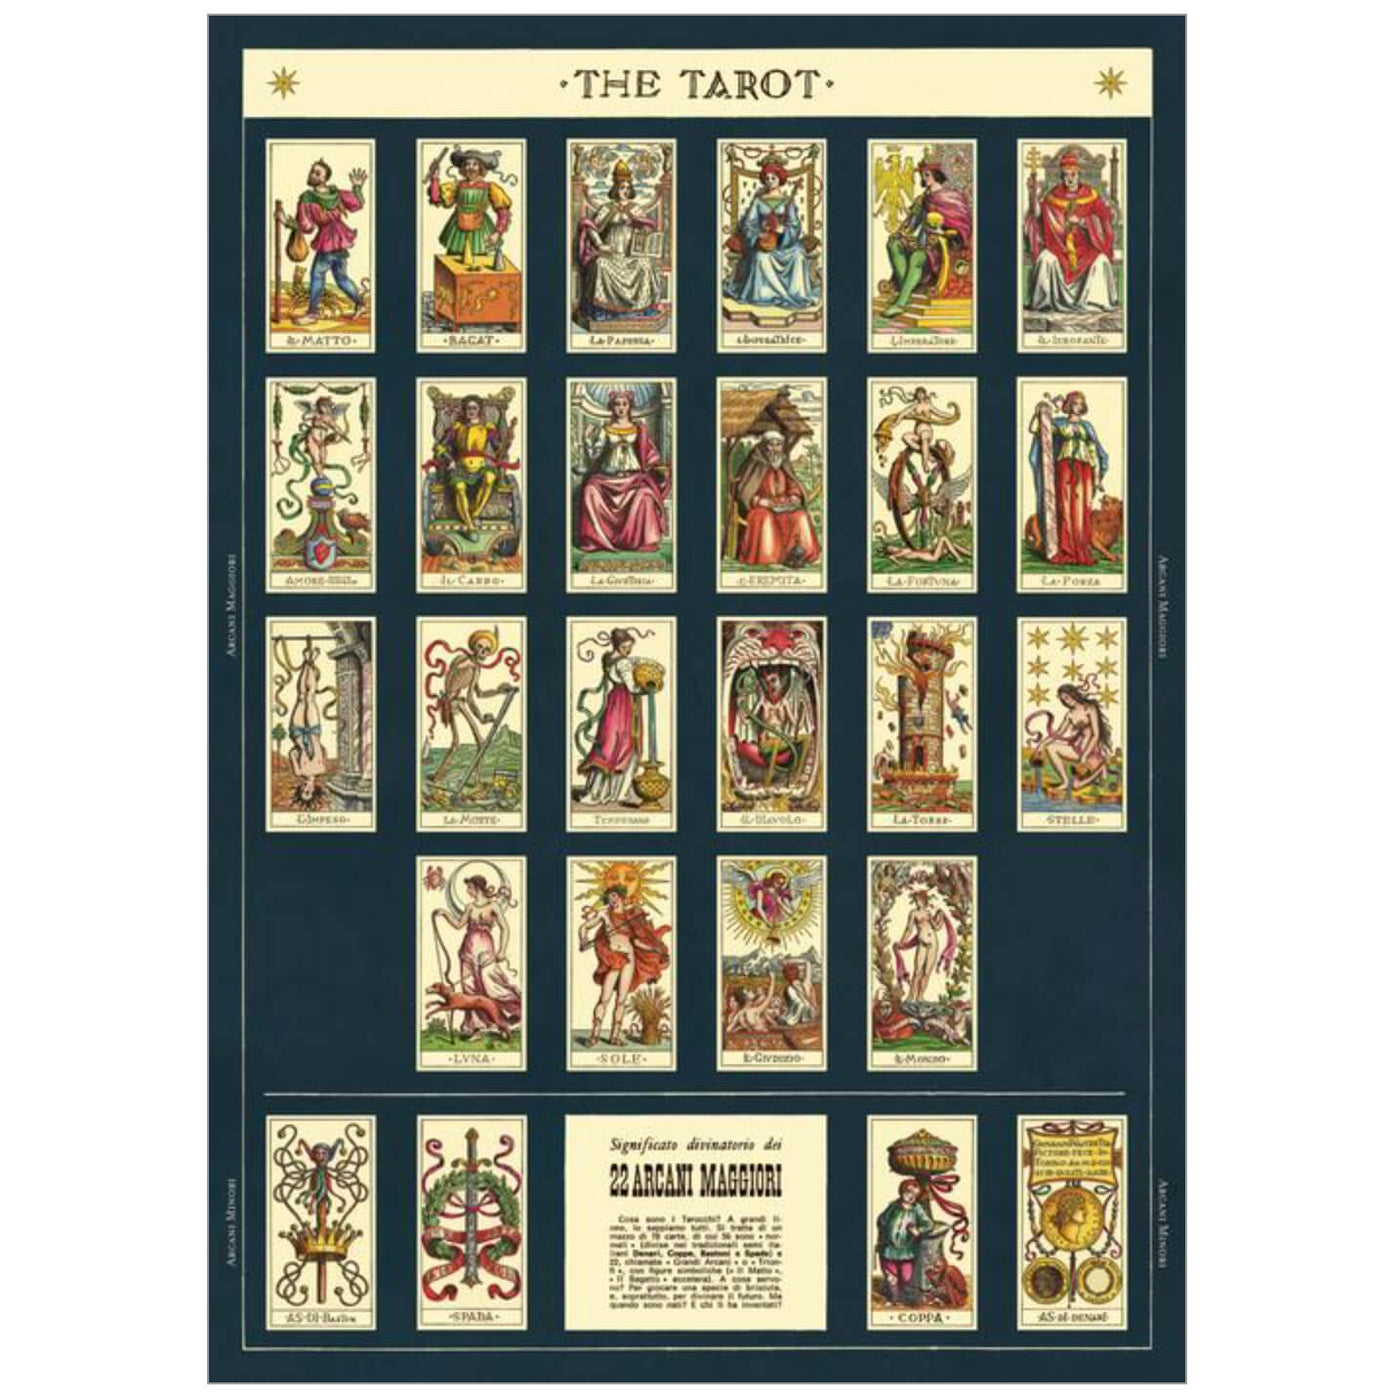 Tarot design featuring tarot imagery on a poster